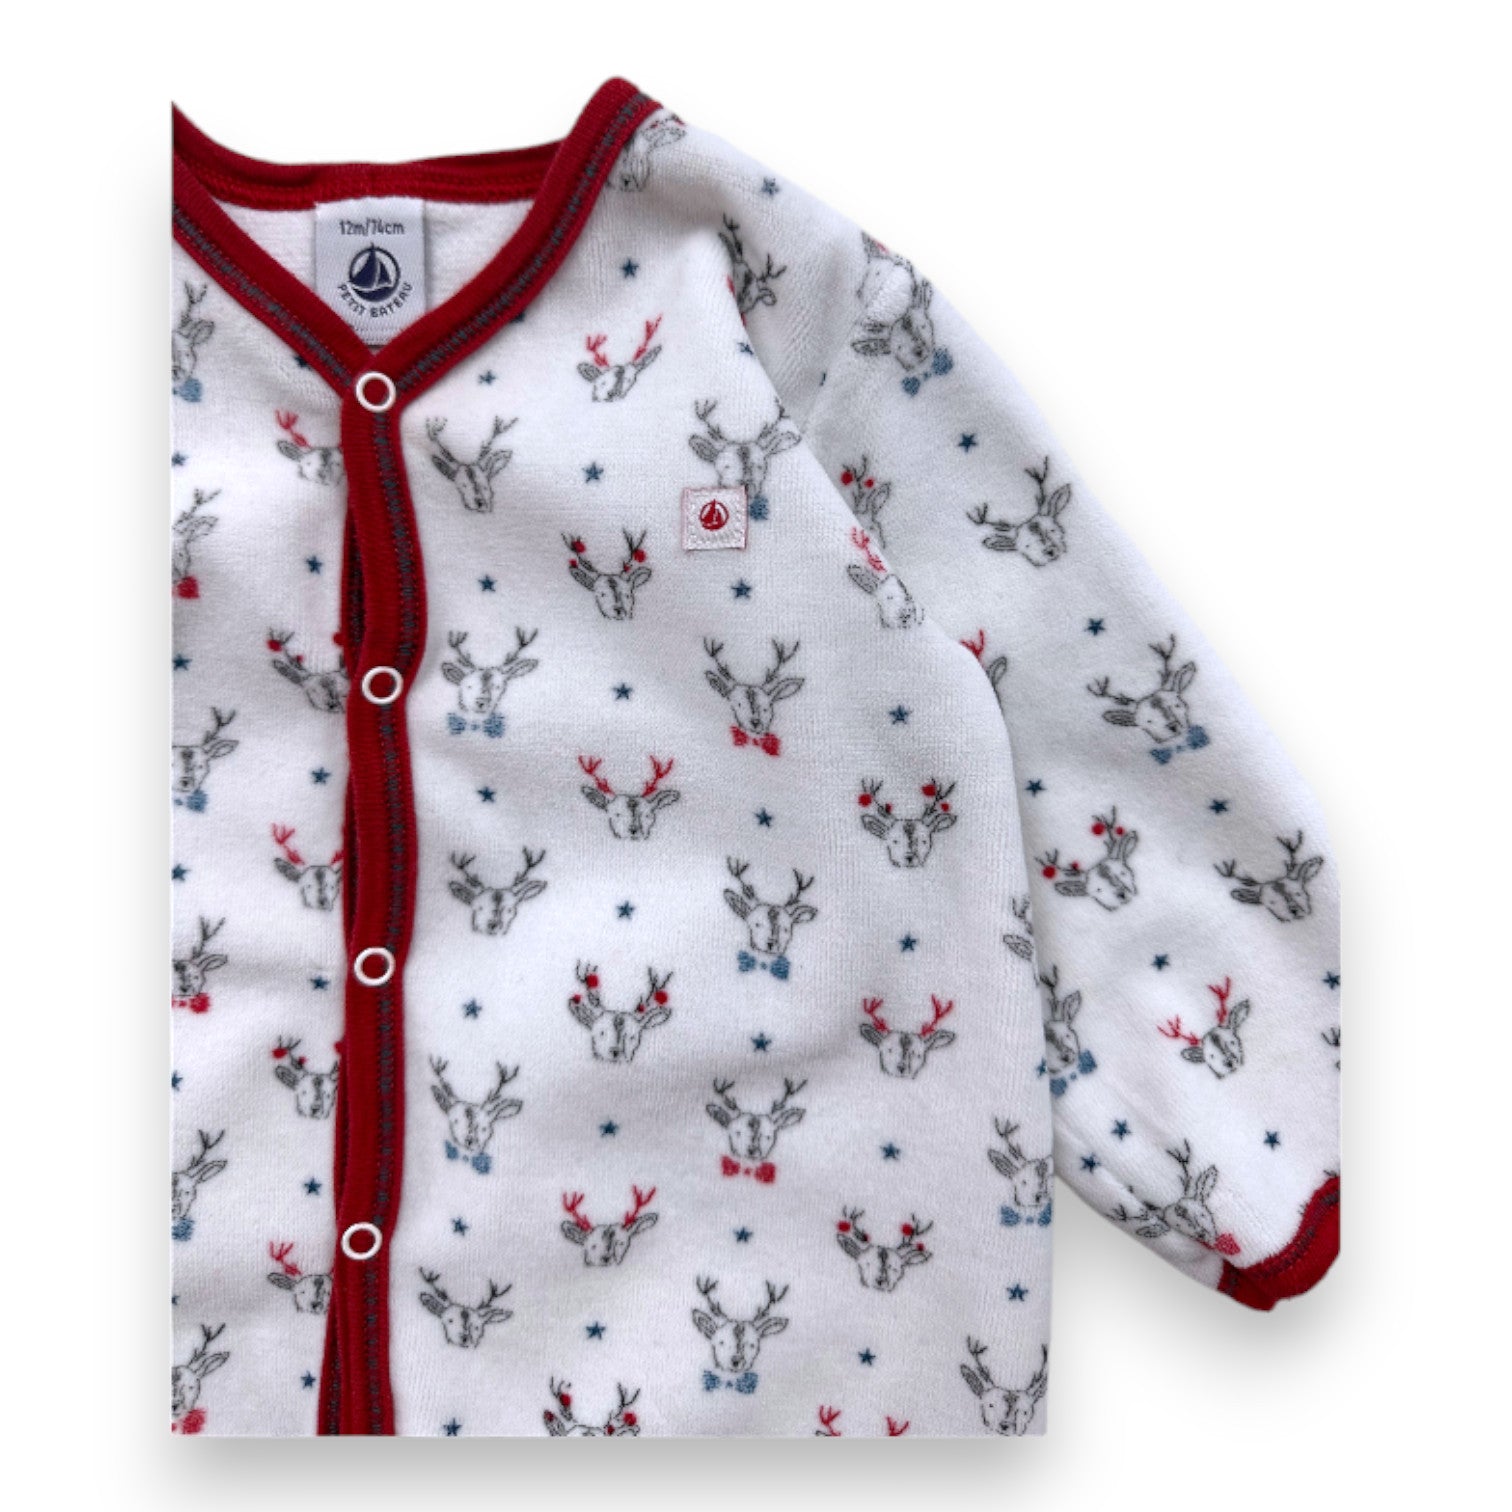 PETIT BATEAU - Pyjama blanc imprimé cerfs - 12 mois